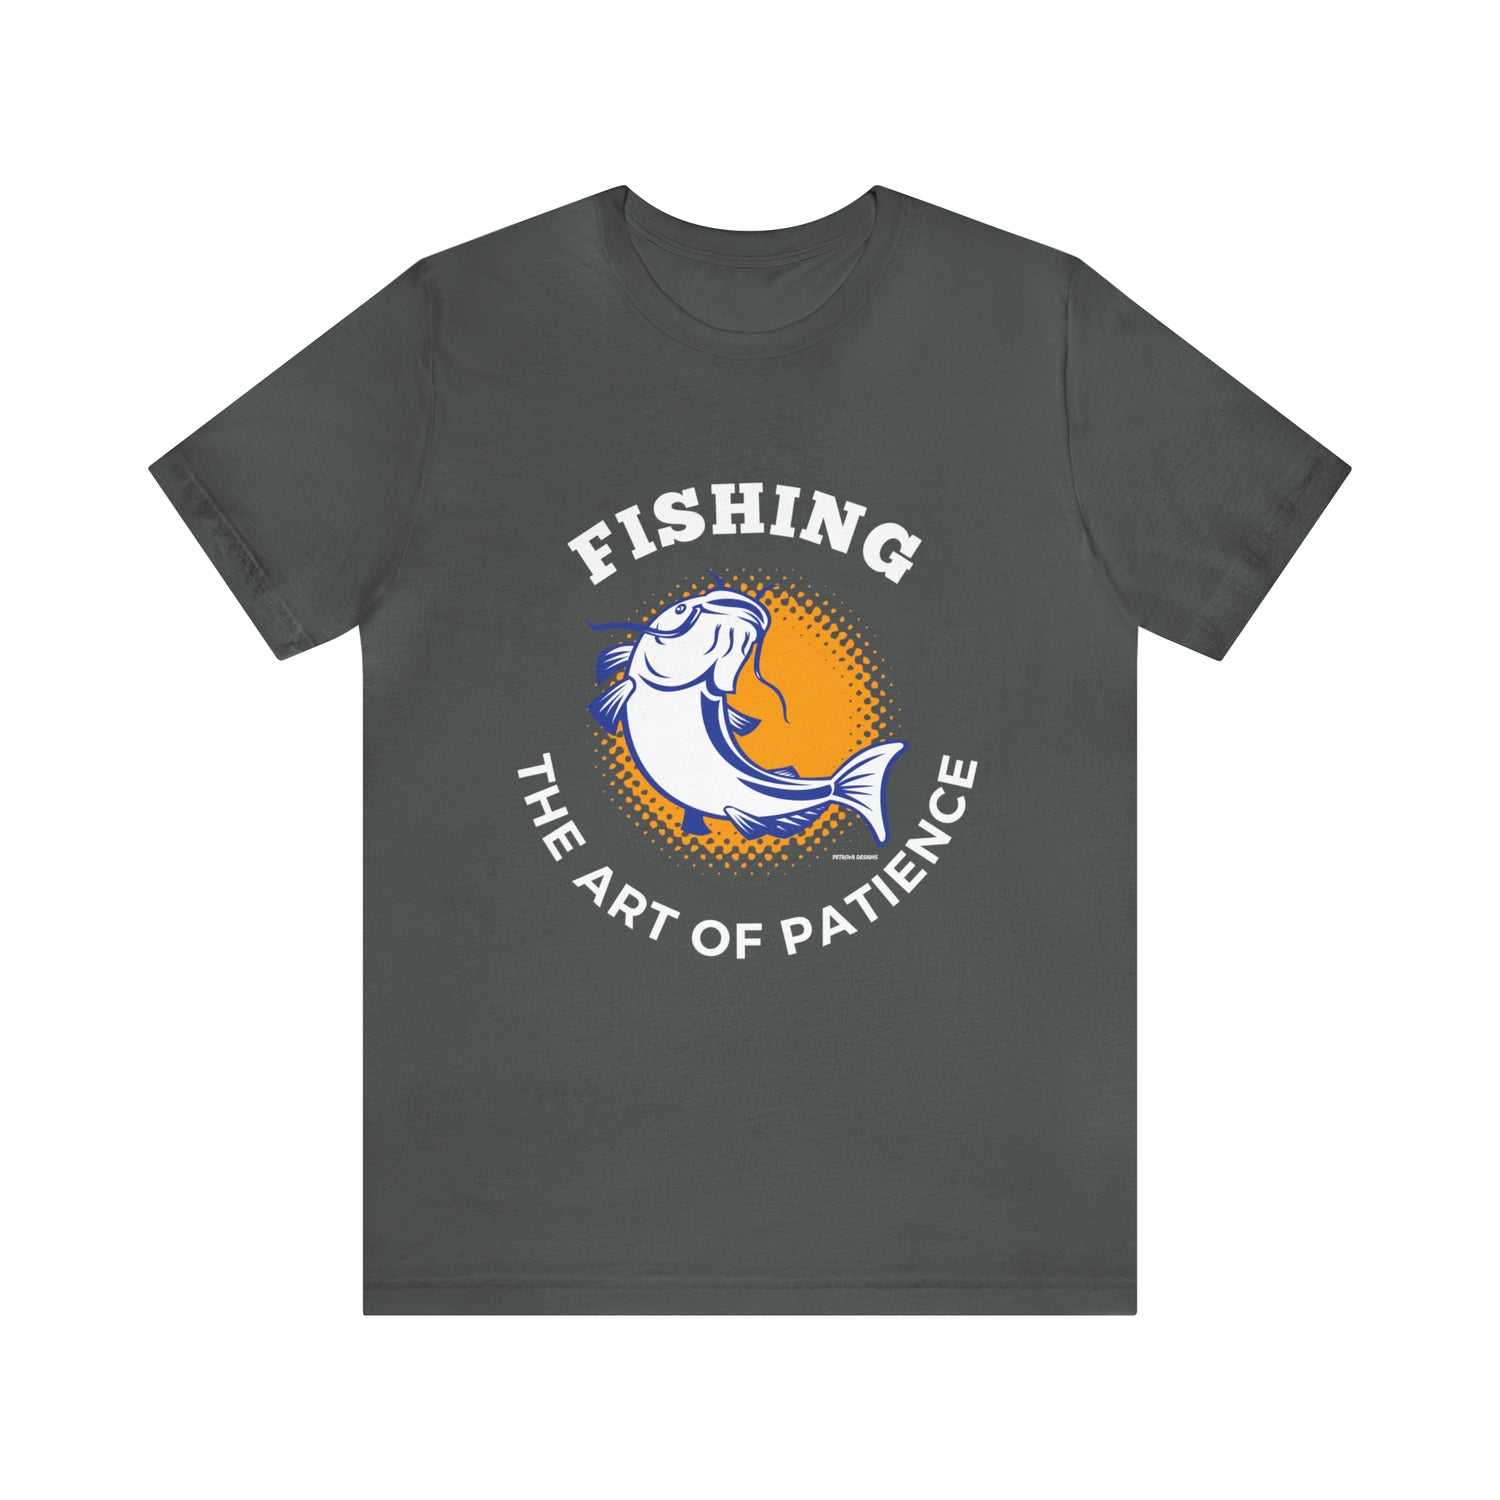 Asphalt T-Shirt Tshirt Design Gift for Friend and Family Short Sleeved Shirt Fishing Hobby Aesthetic Petrova Designs